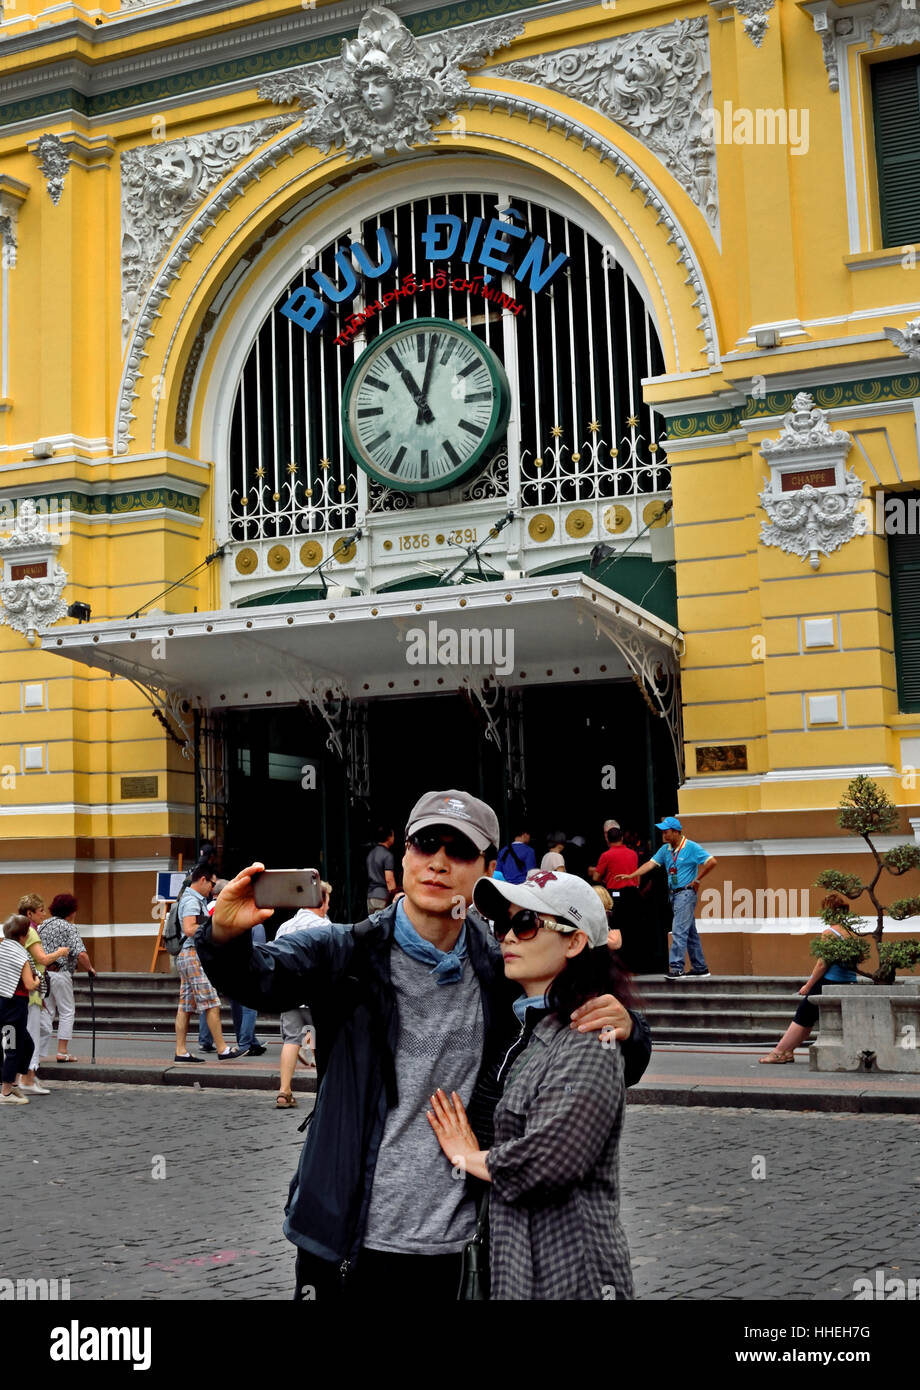 Liebe Jugendliche machen eine Selfie - Old Railway Station Ho Chi Minh City Center (HCMC) Saigon (schwindelerregend hoch, Oktan, Stadt von Handel, Gewerbe und Kultur) Sozialistischen Republik Vietnam Stockfoto